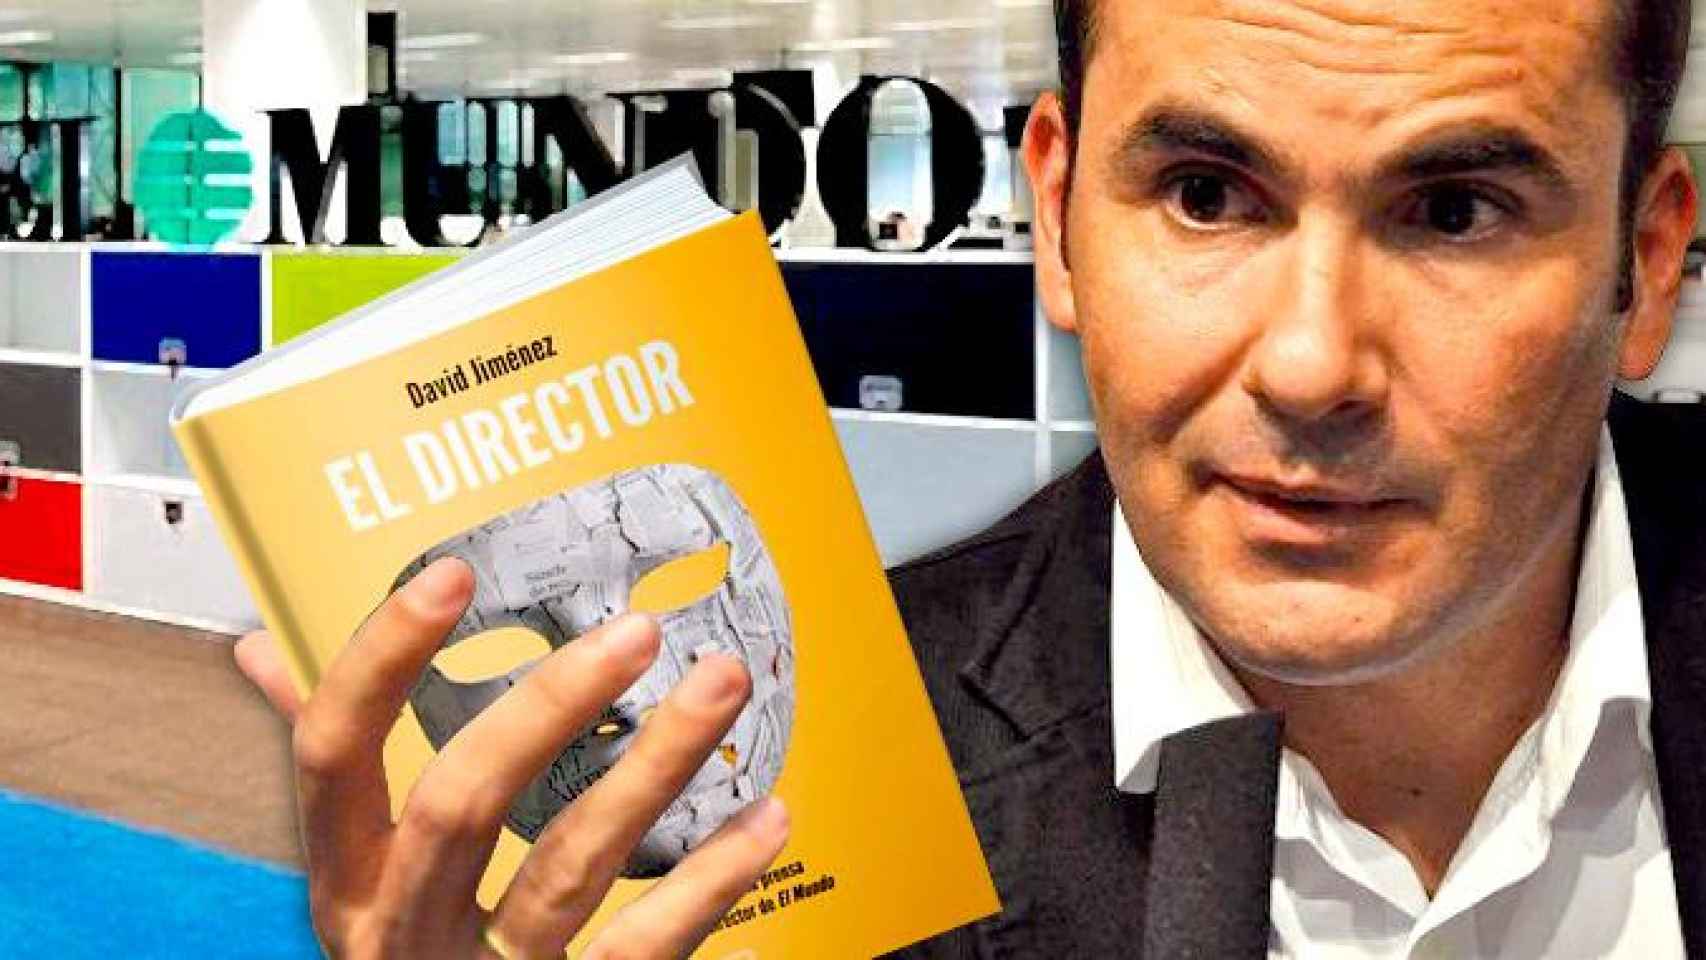 David Jiménez, exdirector de 'El Mundo', con su libro 'El director' / FOTOMONTAJE DE CG